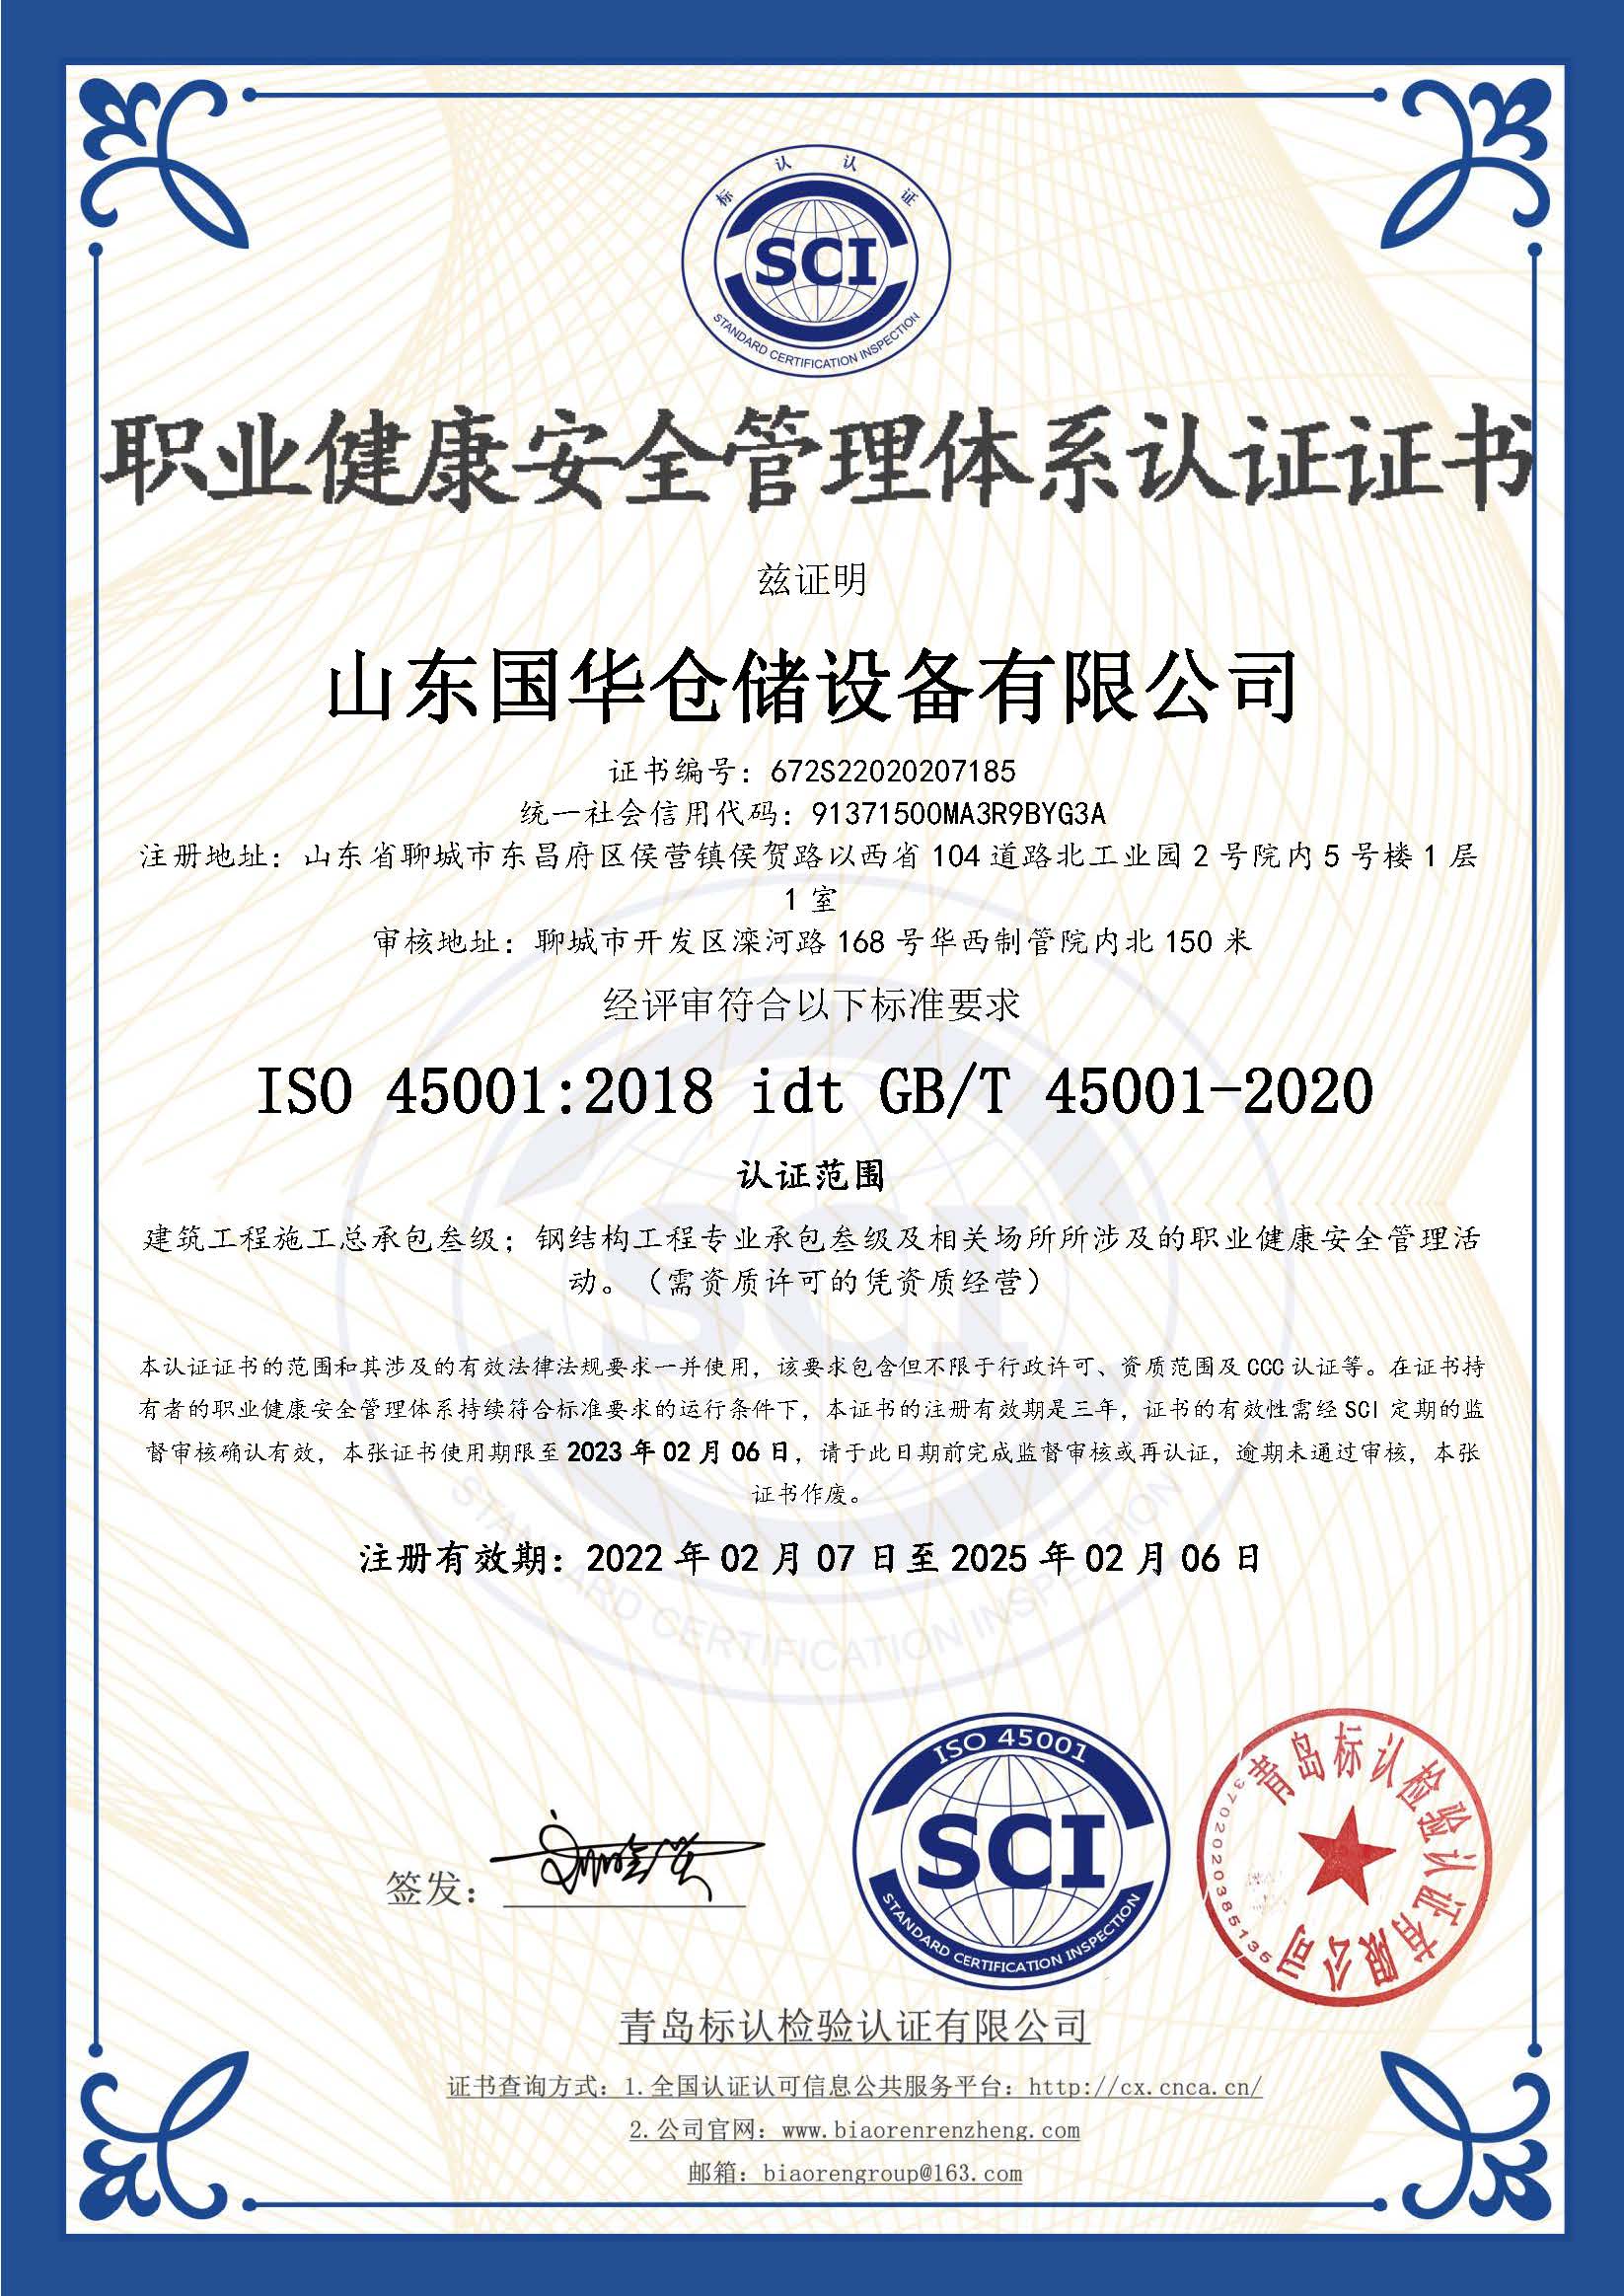 芜湖钢板仓职业健康安全管理体系认证证书